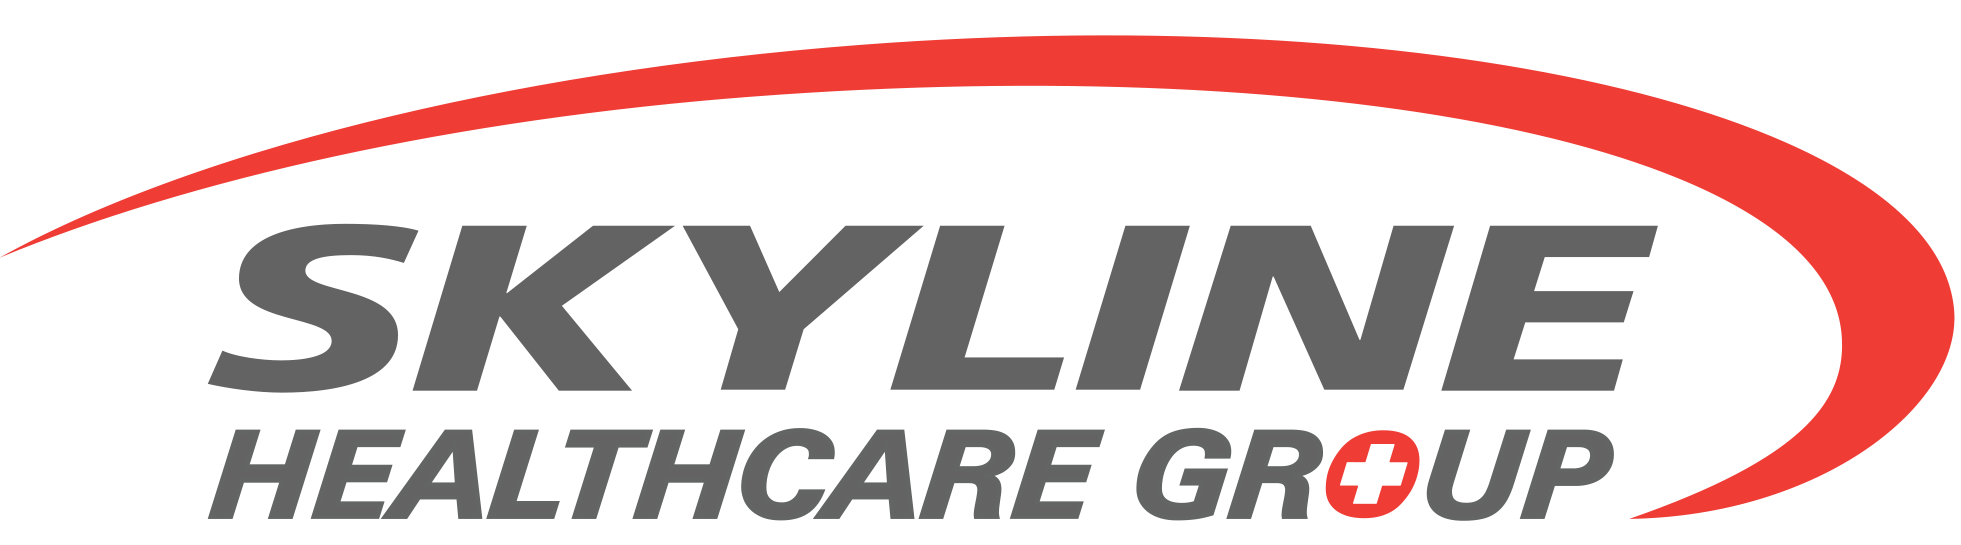 Skyline Healthcare Group